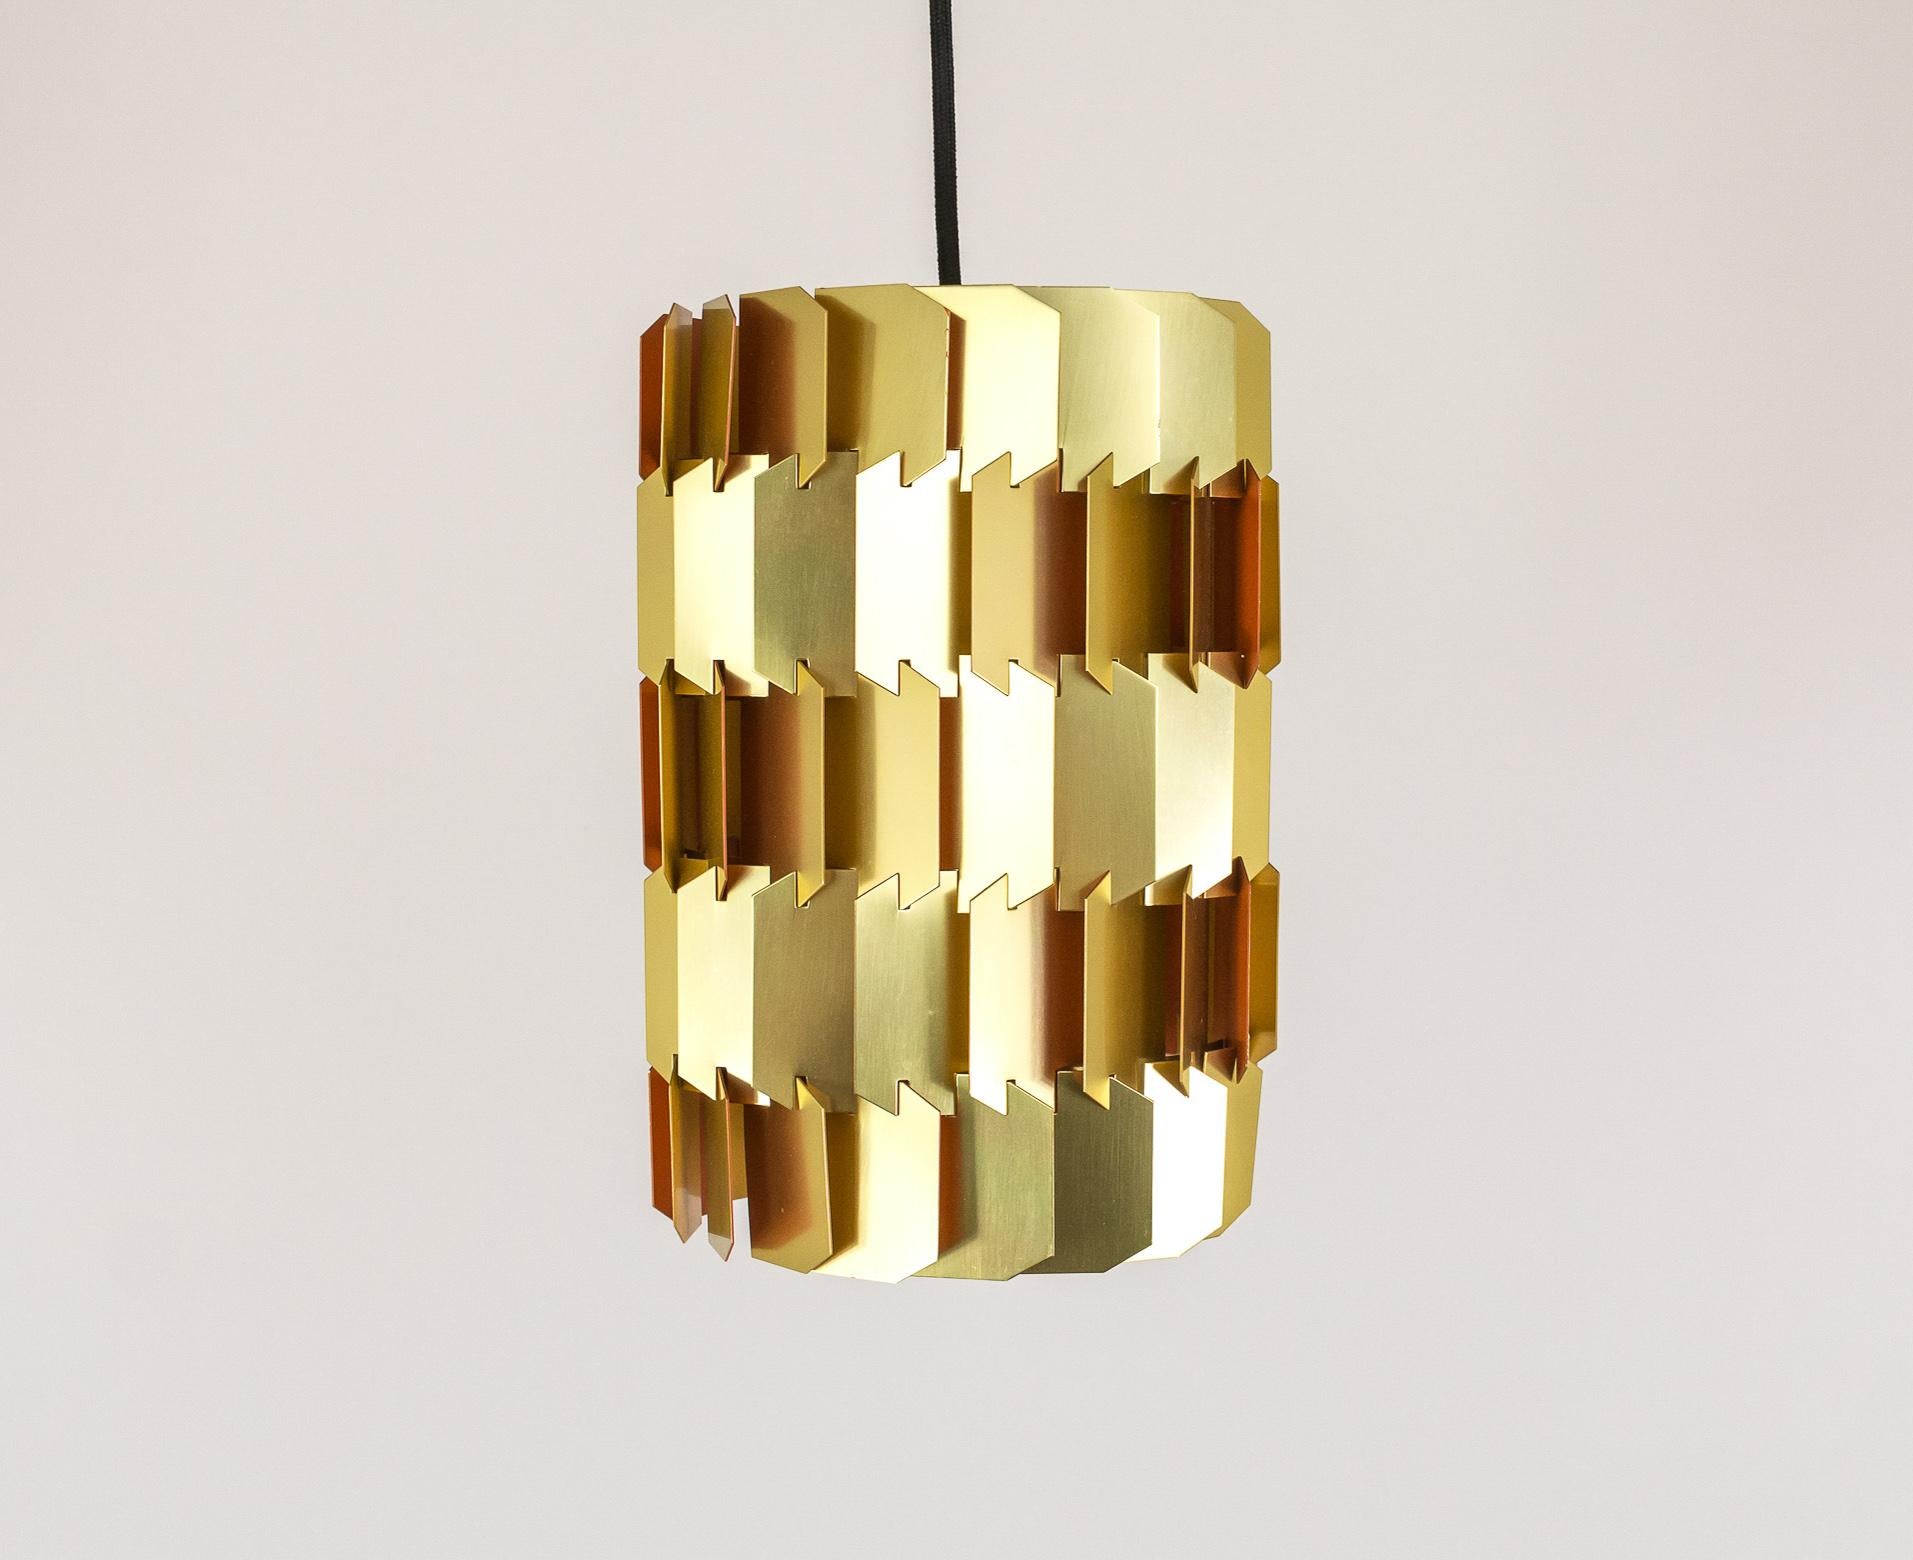 Louis Weisdorf, l'éminent architecte et designer danois, a créé cette suspension à facettes en or en 1963. 

La facette est constituée de 18 nuances de forme identique. La construction de la lampe est un puzzle en 3D, car chaque pièce s'emboîte